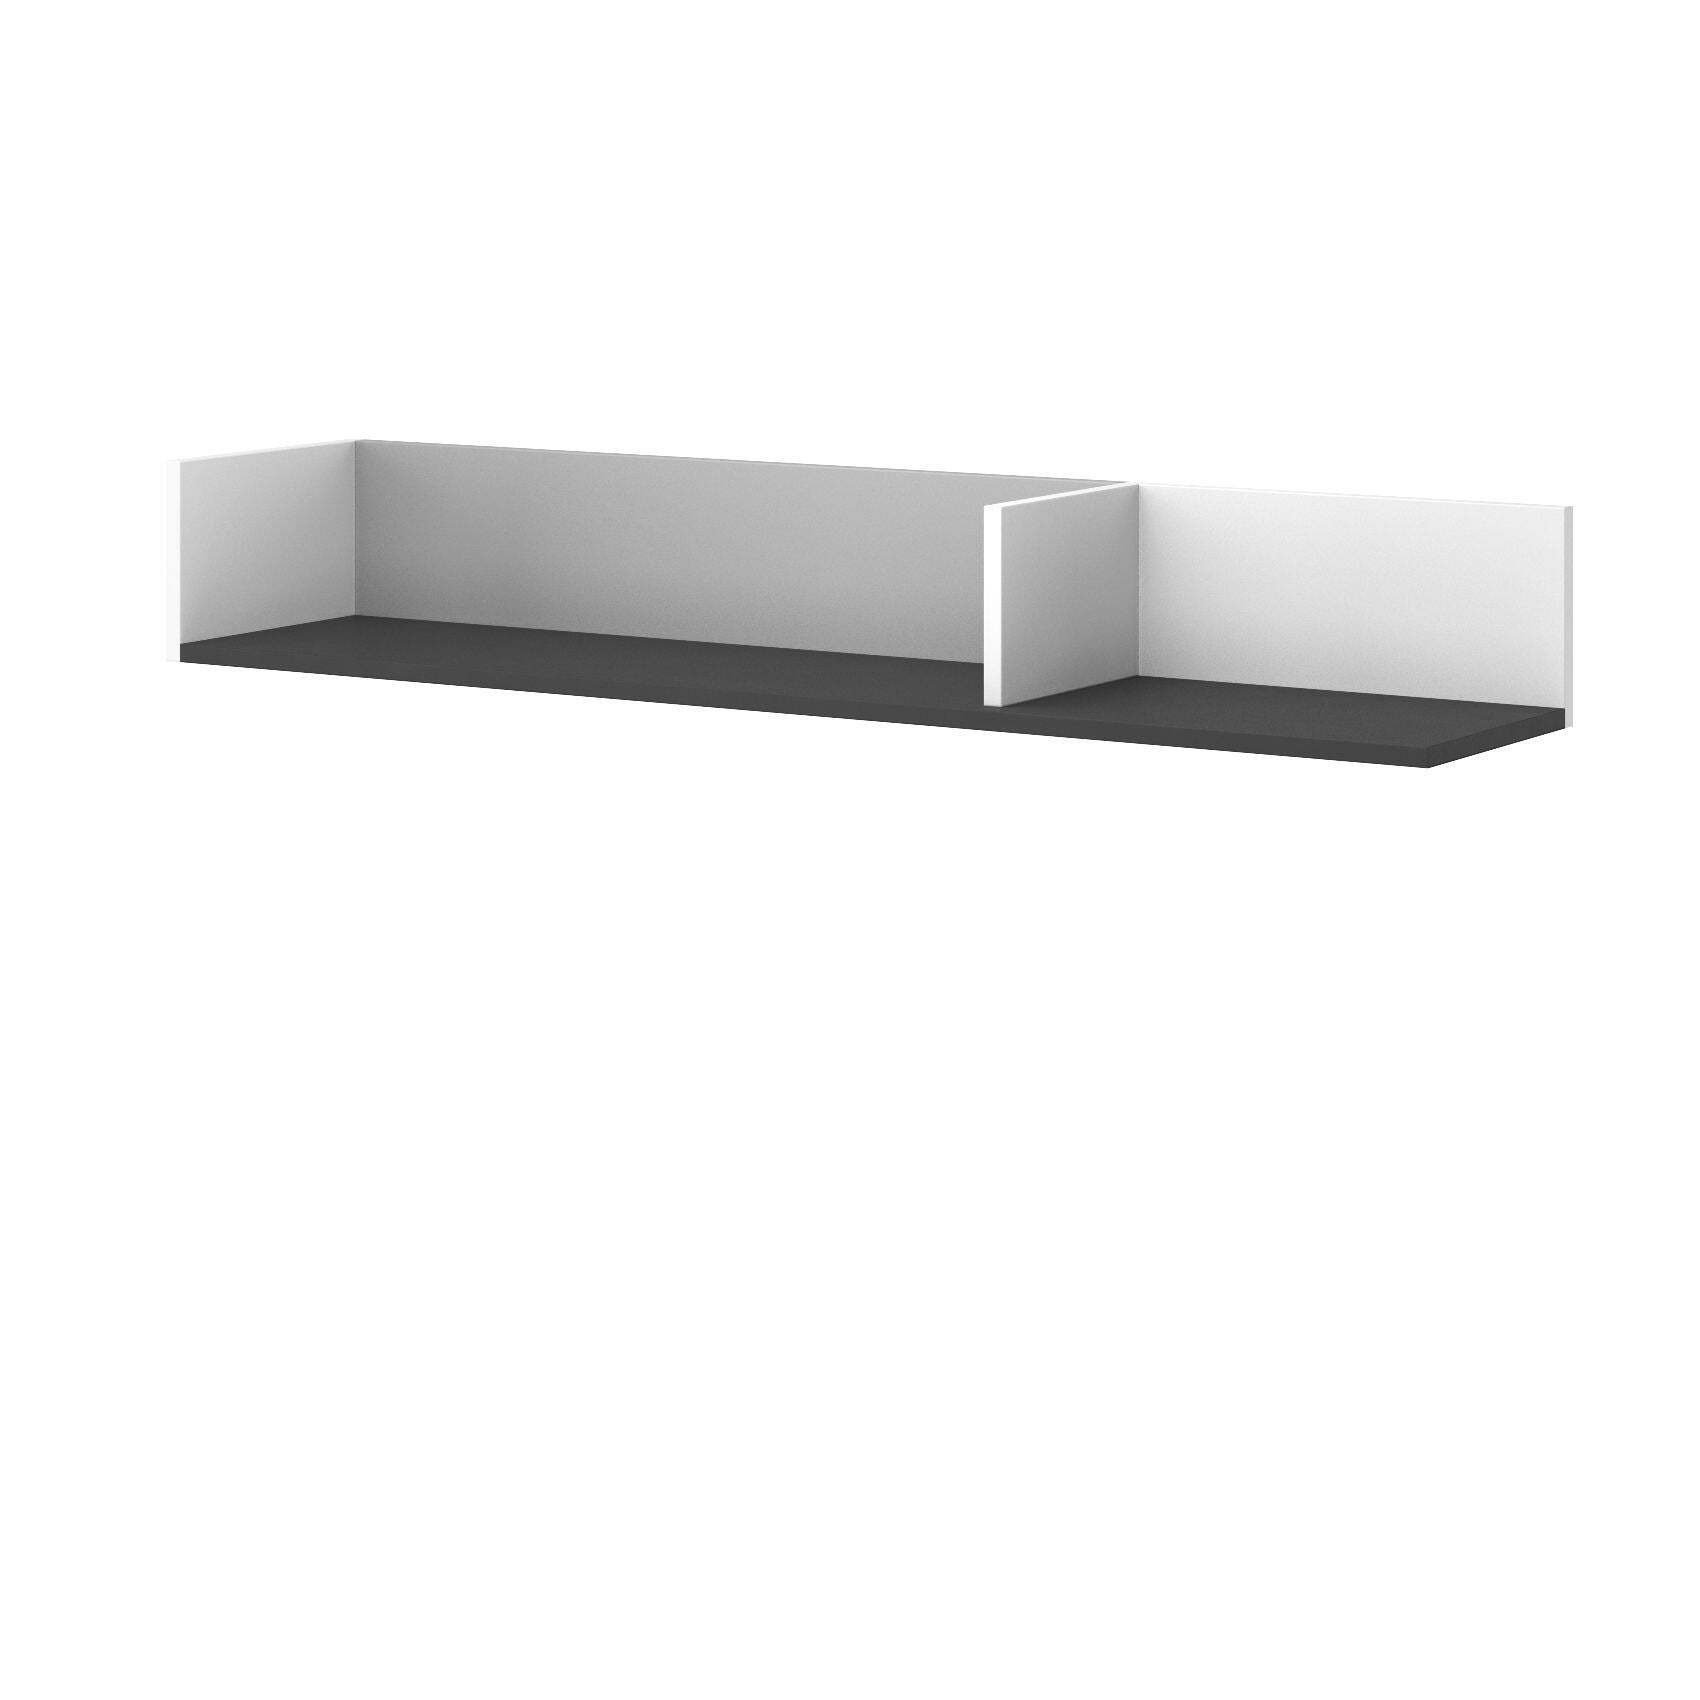 Imola IM-11 Wall Hung Shelf 120cm - White Matt 120cm - image 1